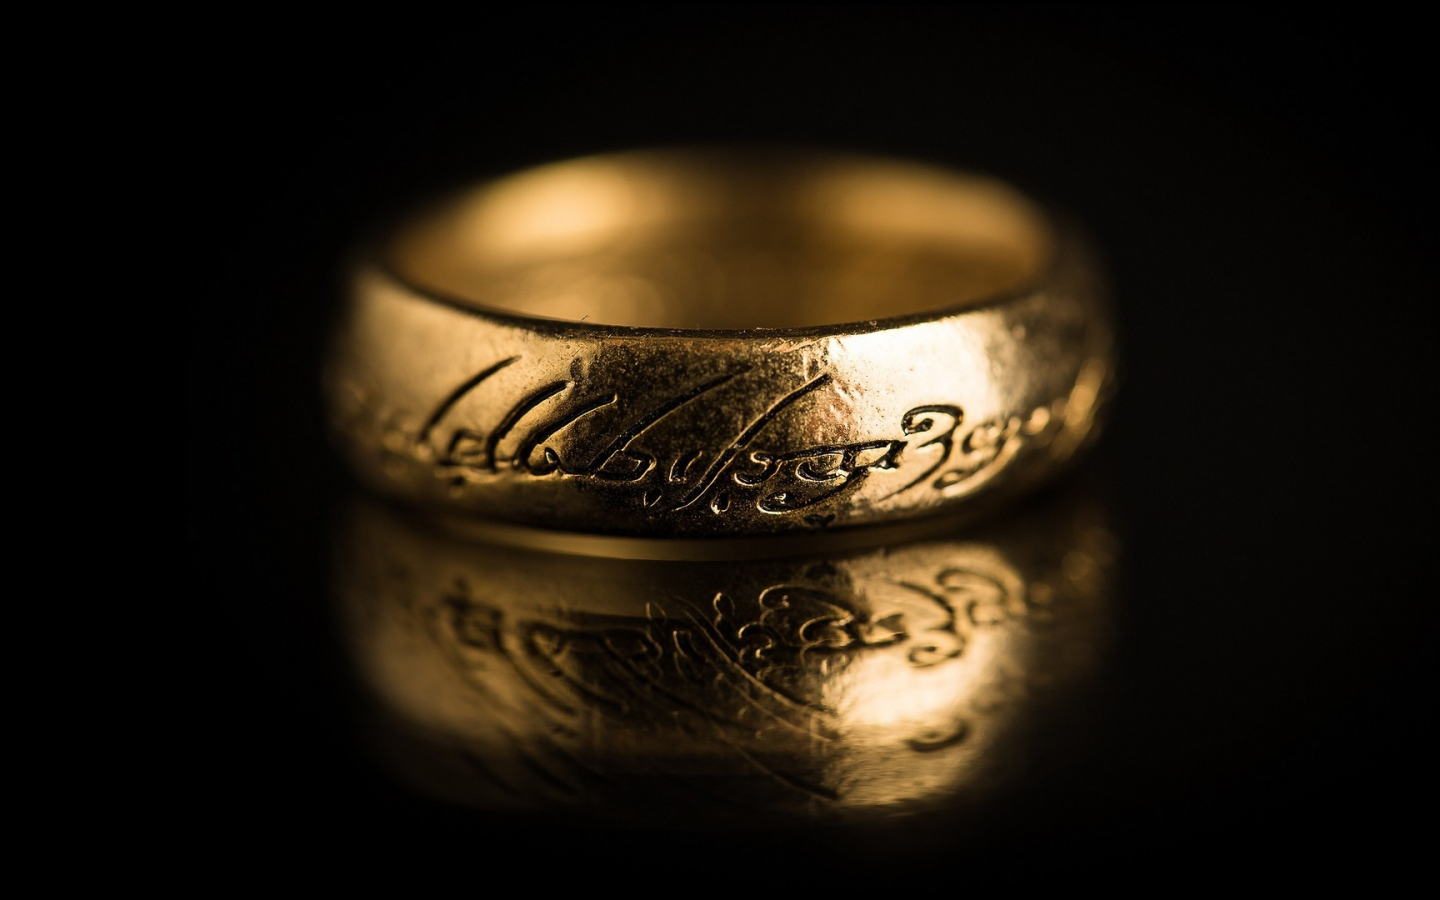 золотое, кольцо, надписи, темный фон, Властелин колец